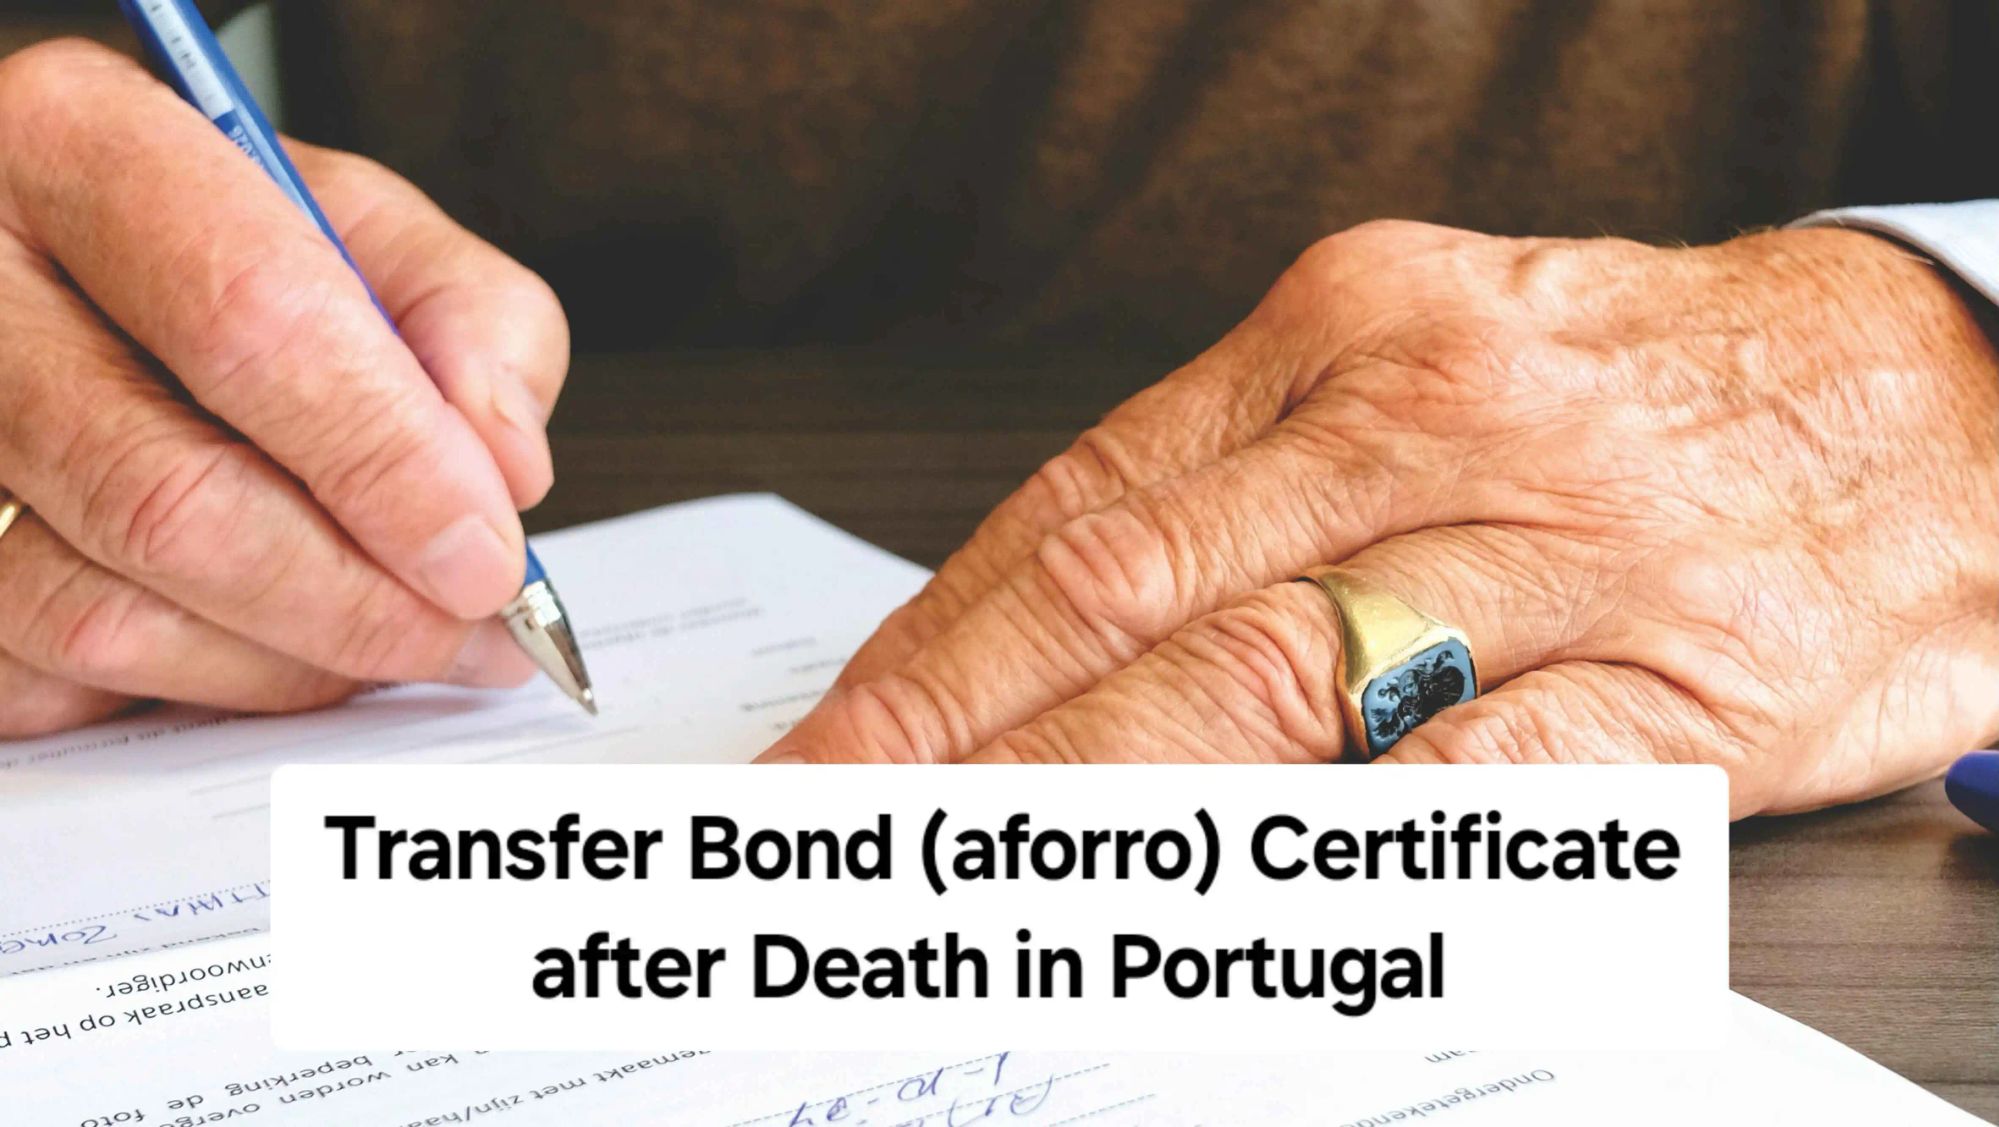 transfer-bond-aforro-certificate-after-death-pt3306900684402048023.webp